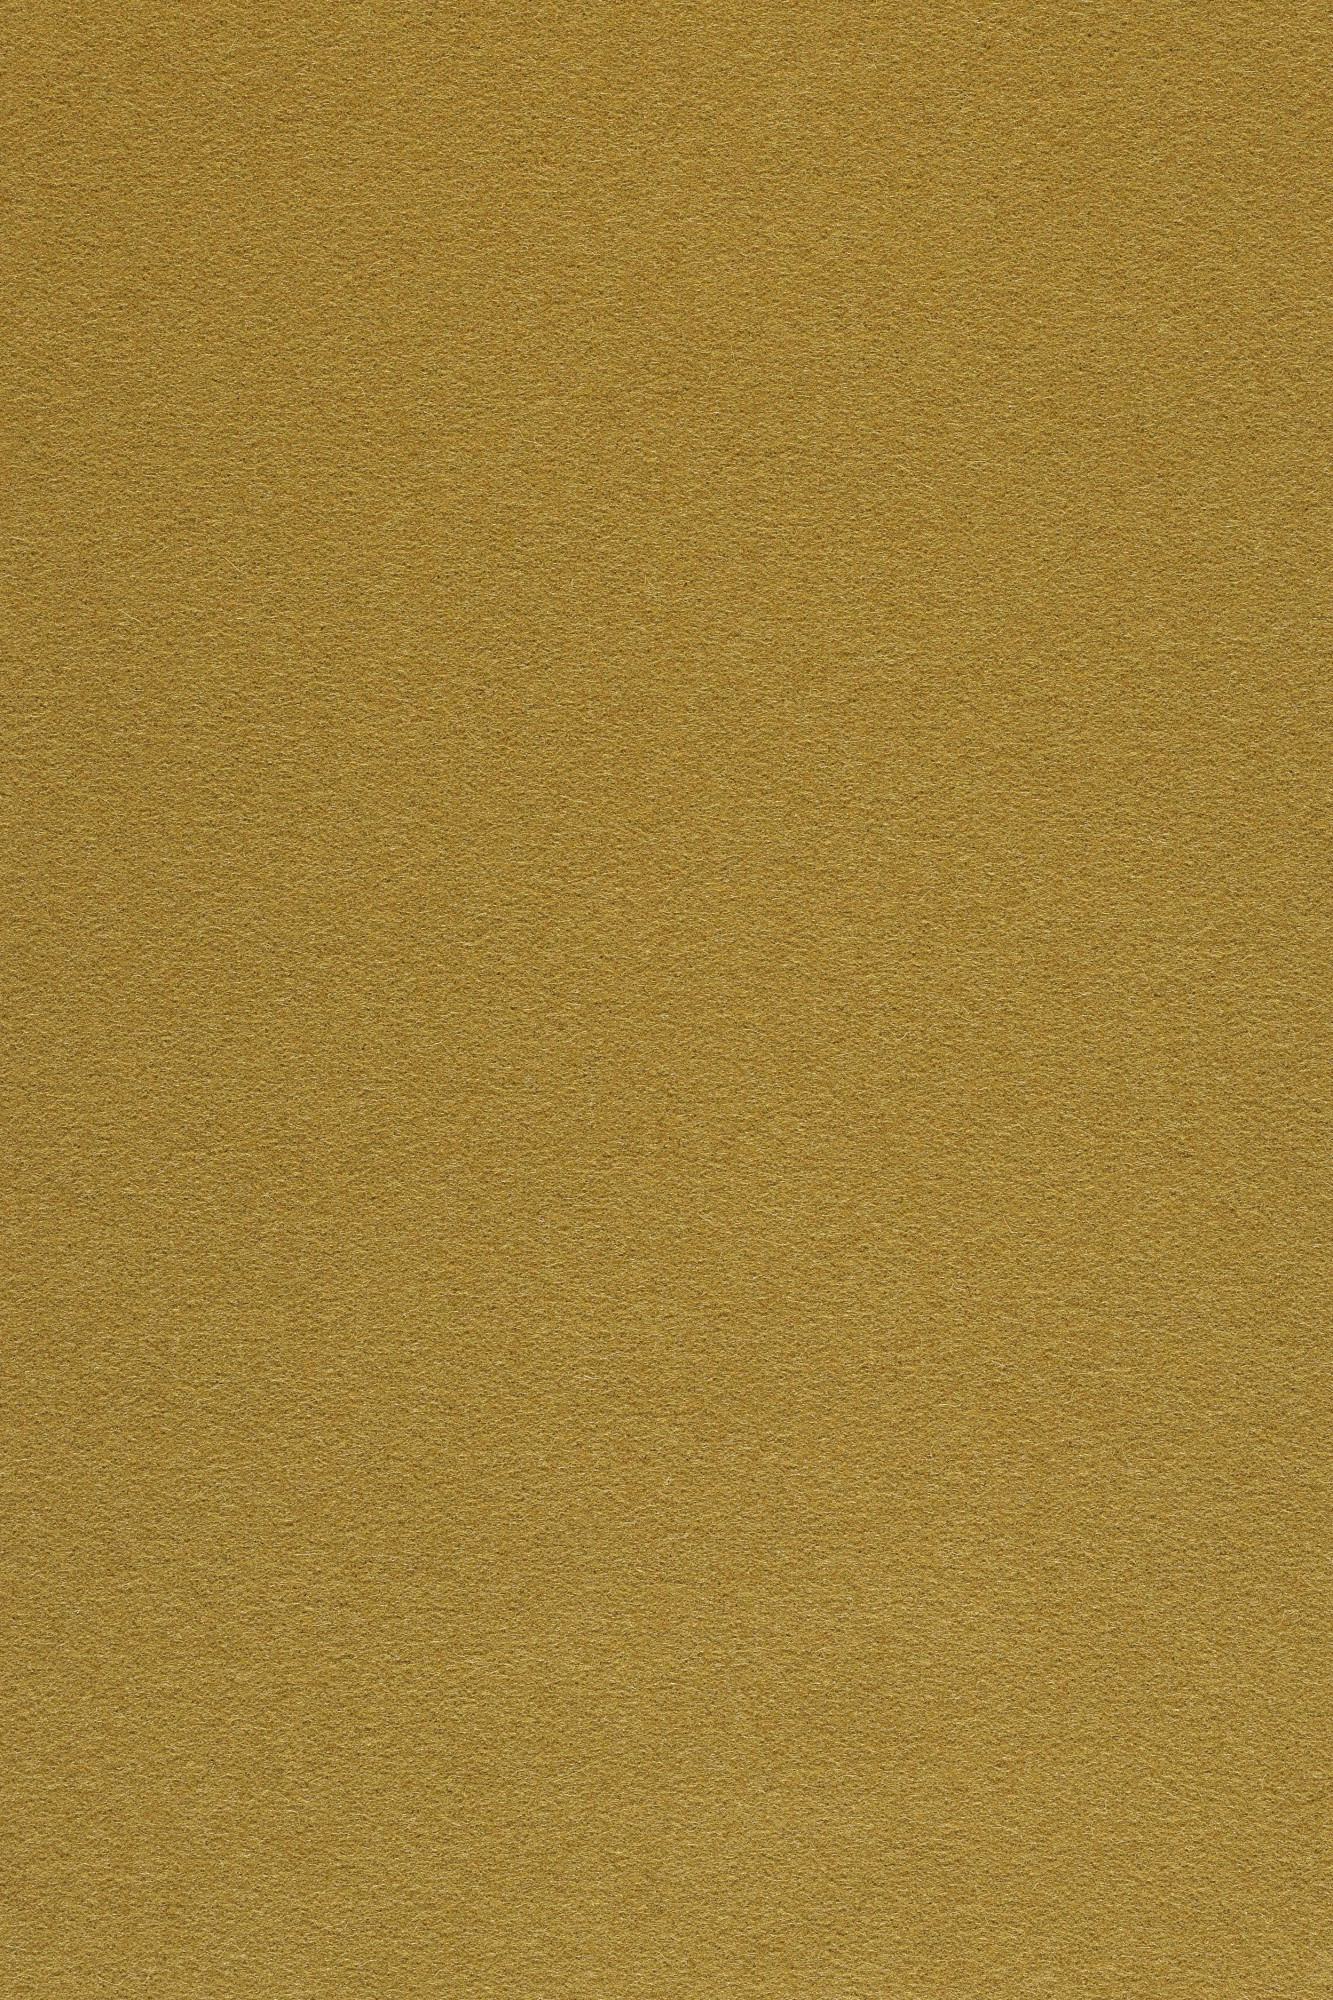 Fabric sample Divina 3 246 brown